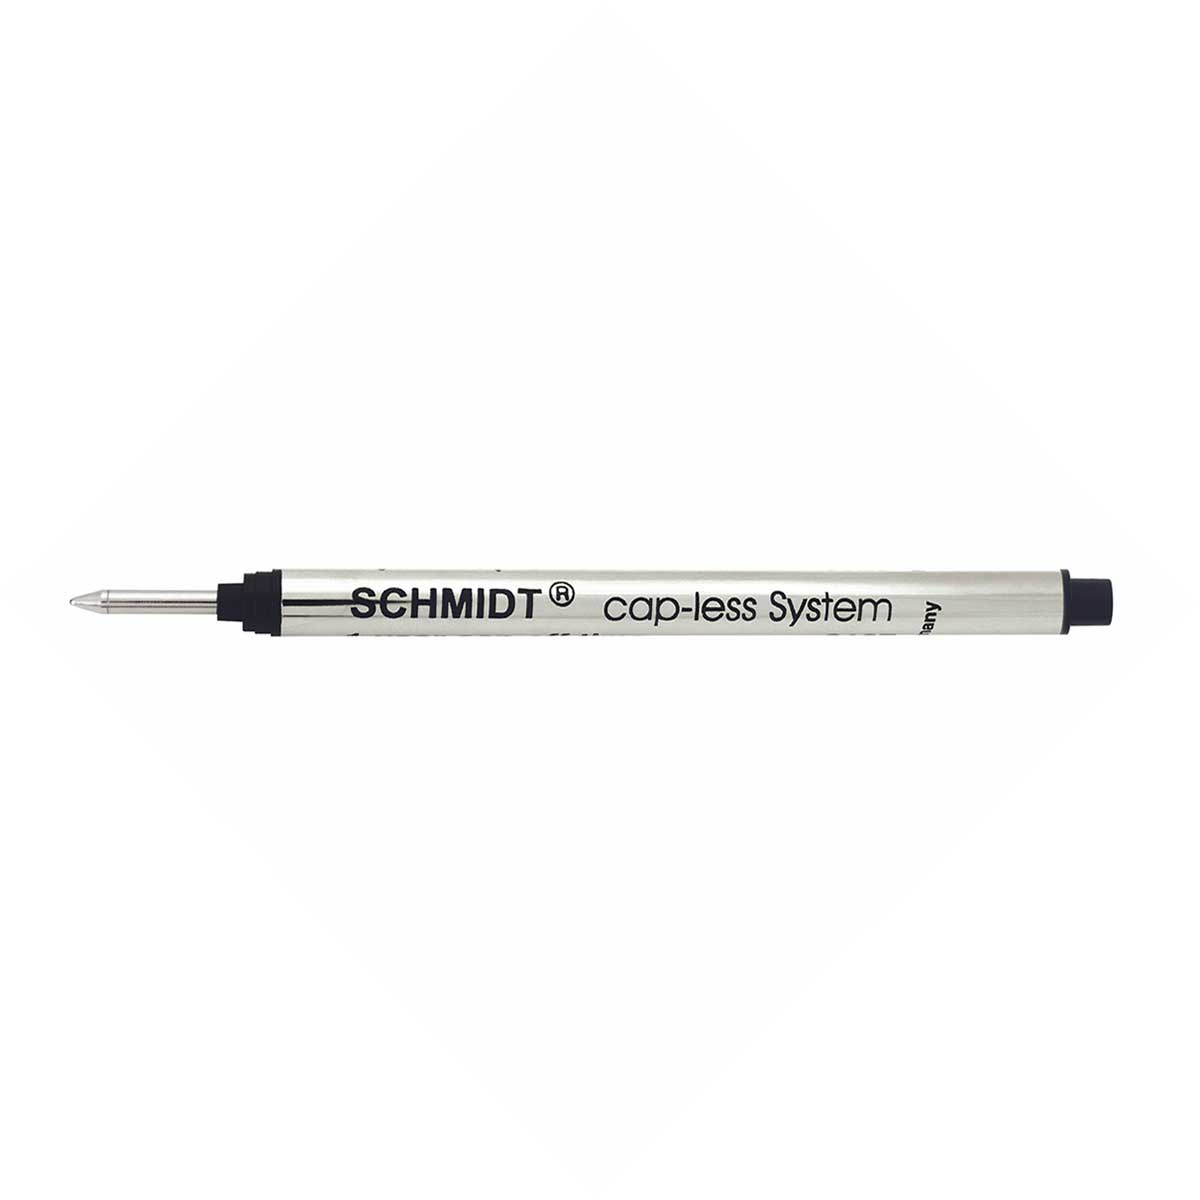 Schmidt Capless System Rollerball Refill Black Medium Long, 8126  Schmidt Ballpoint Refills